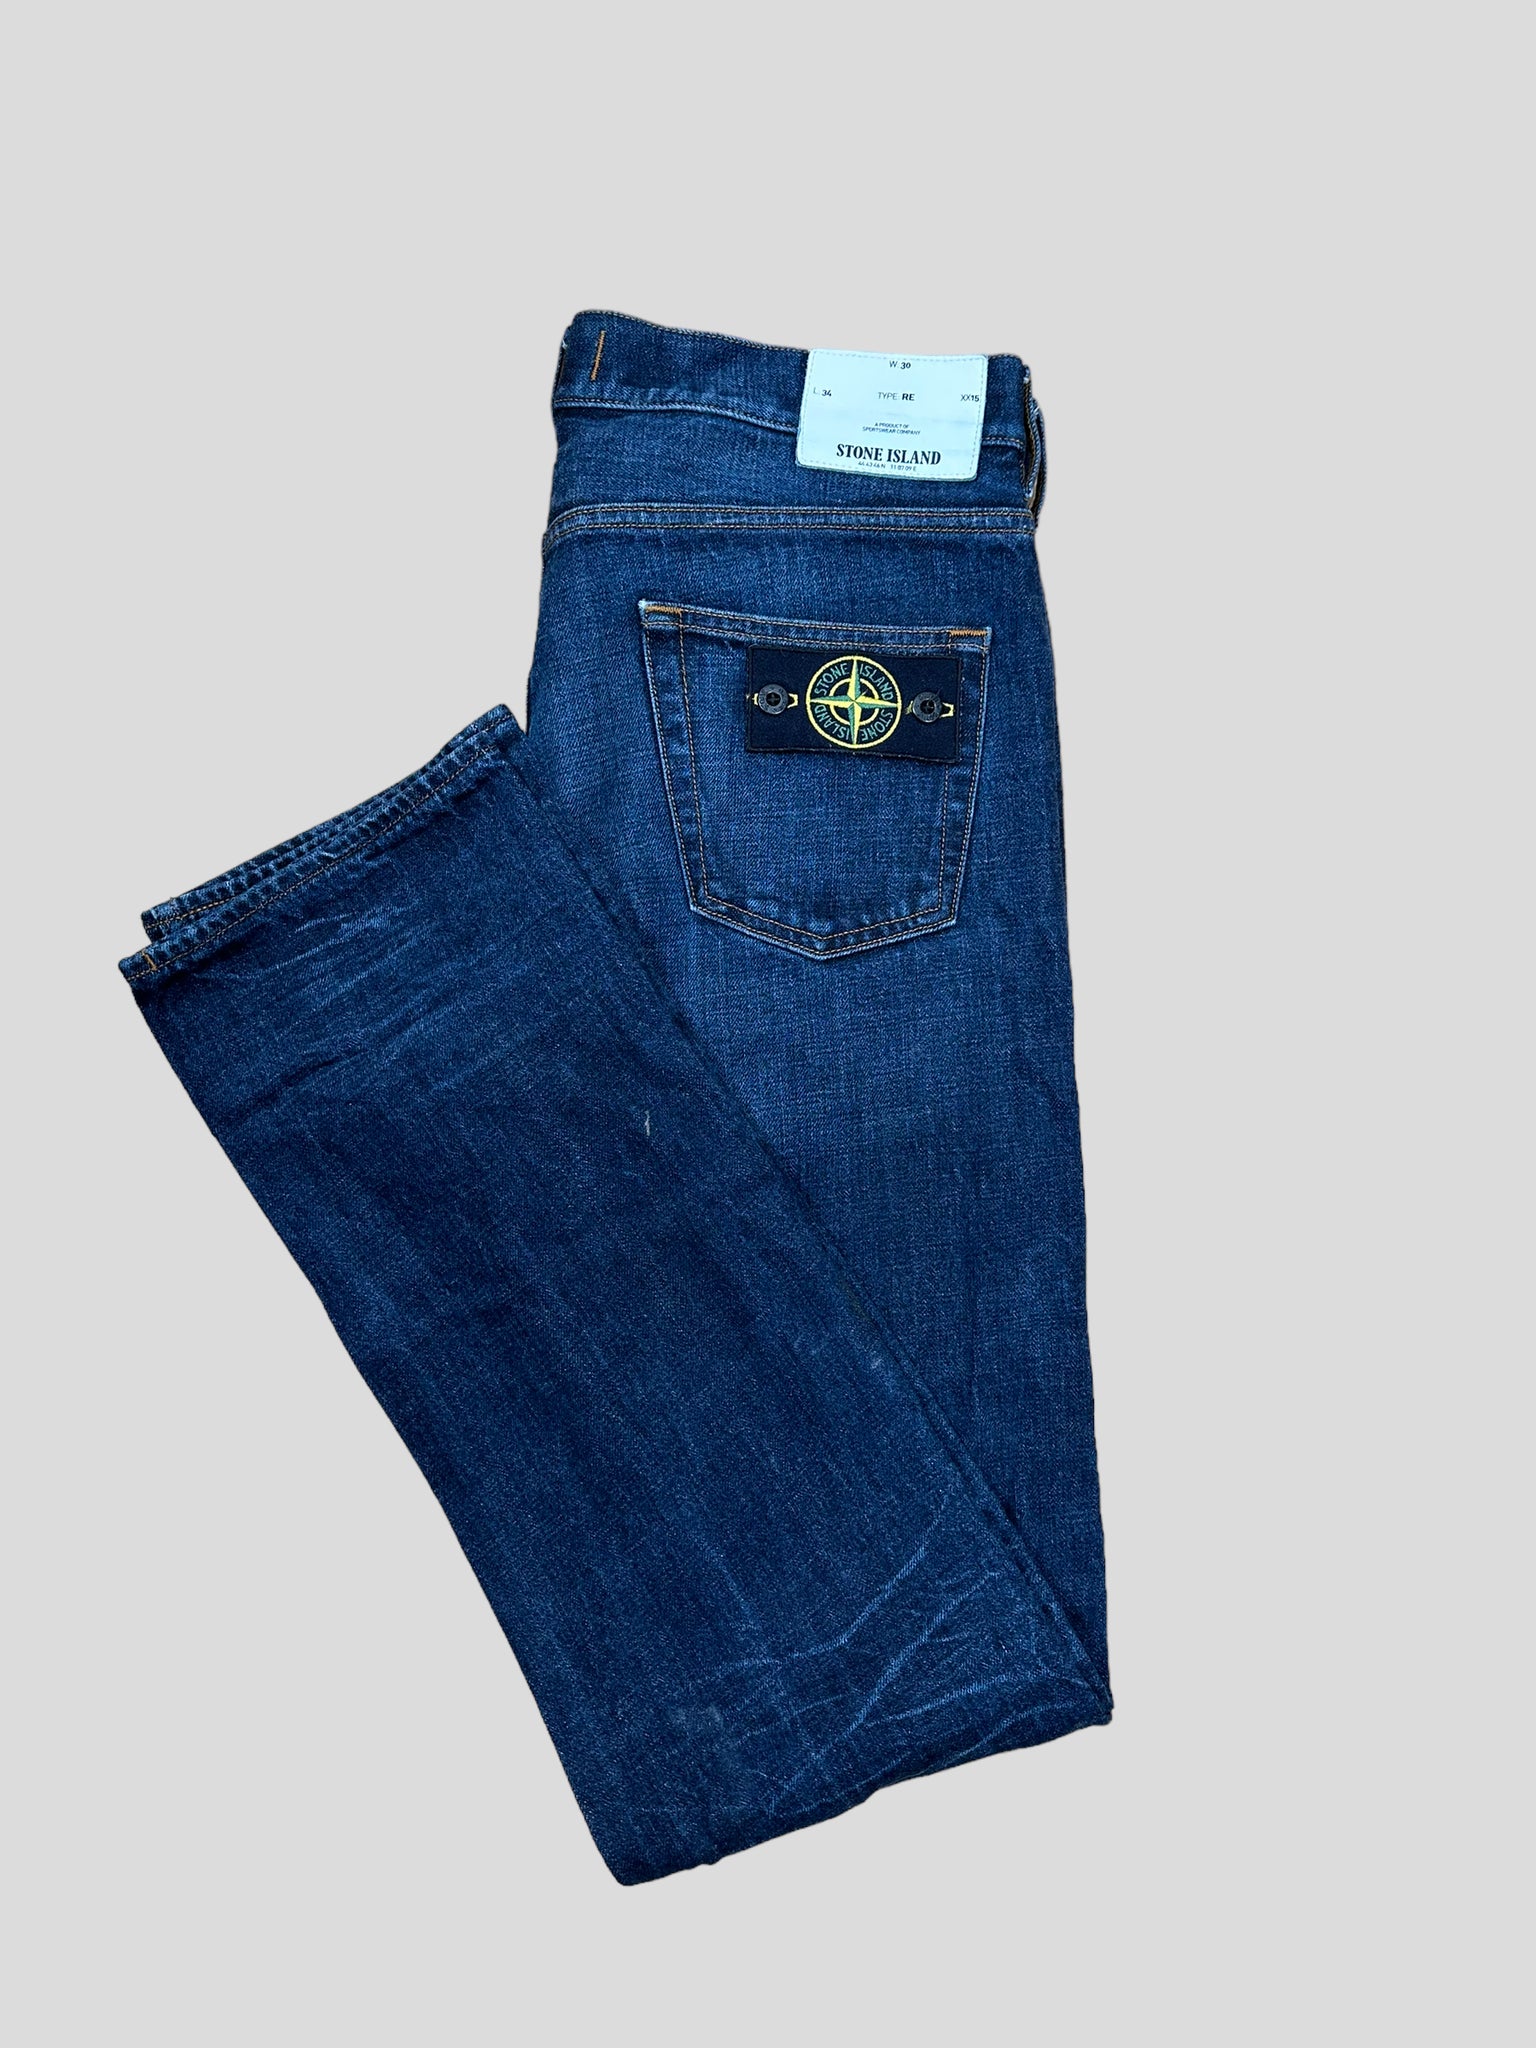 Stone Island Jeans W30” L34”